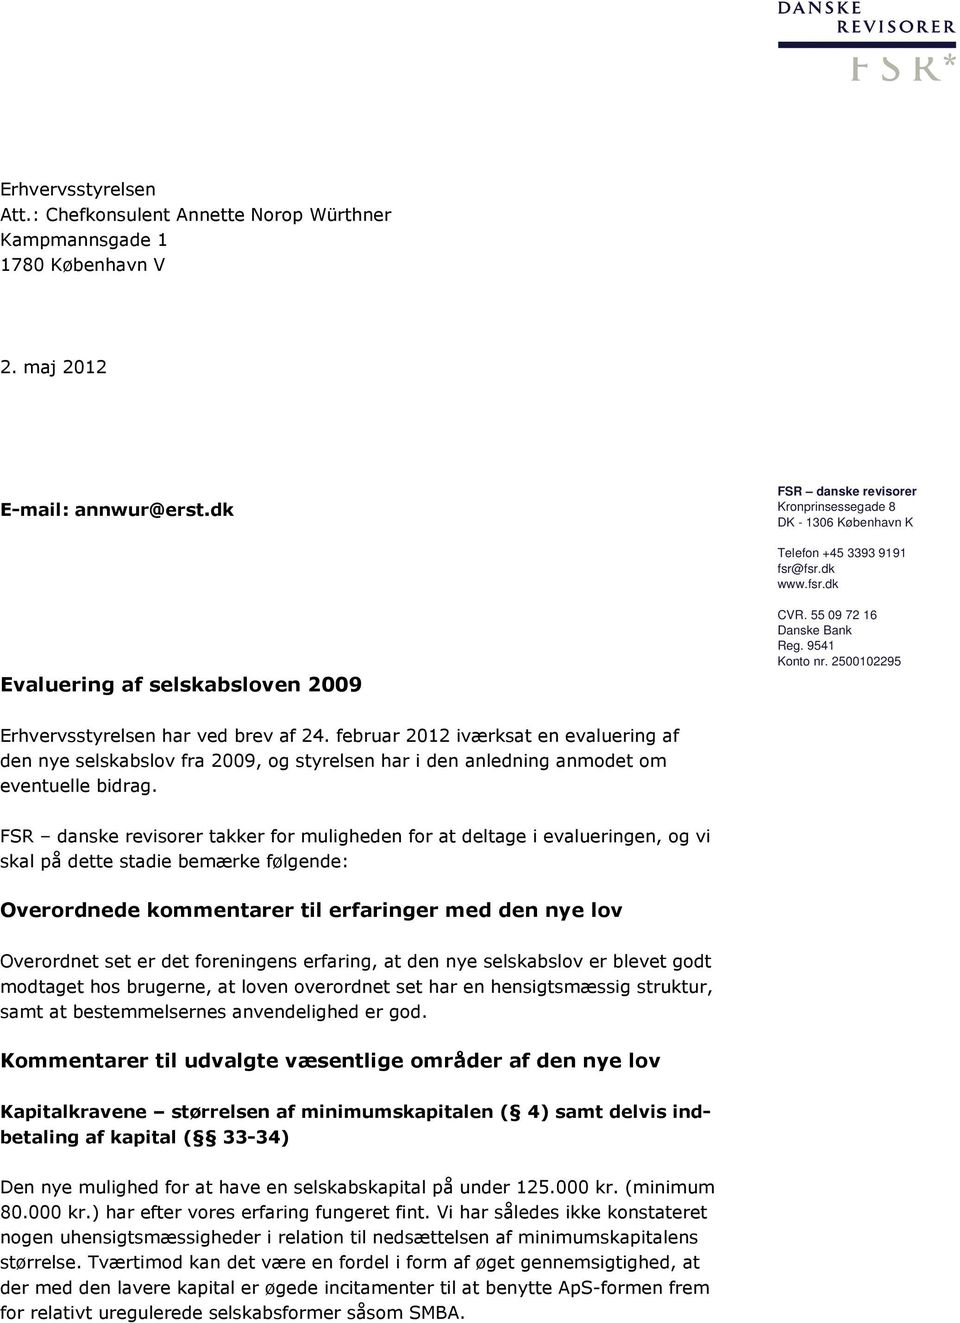 2500102295 Erhvervsstyrelsen har ved brev af 24. februar 2012 iværksat en evaluering af den nye selskabslov fra 2009, og styrelsen har i den anledning anmodet om eventuelle bidrag.